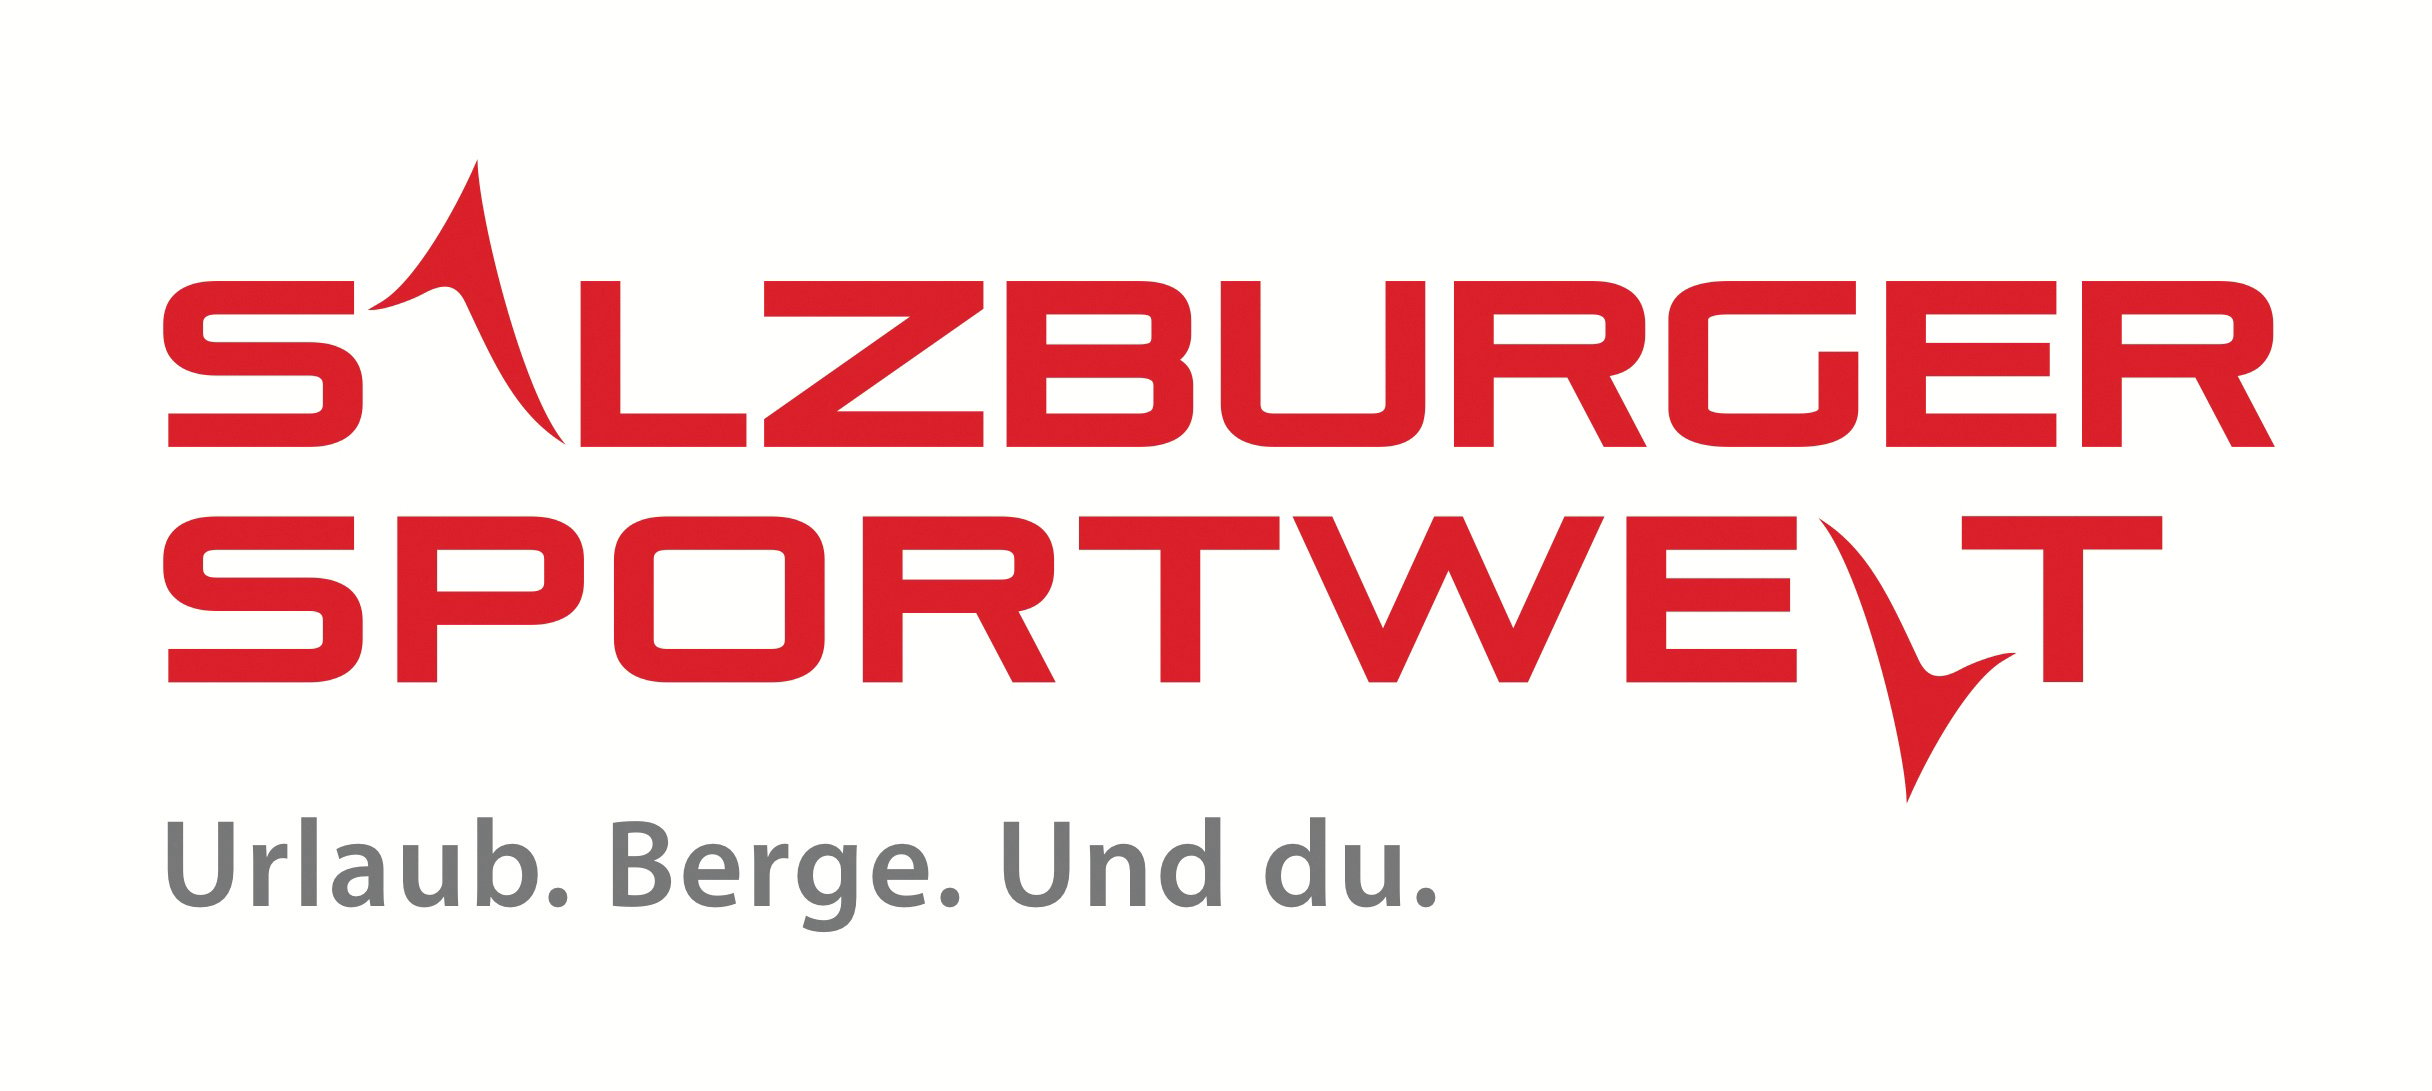 Salzburgersportwelt 2012 mit Claim-1